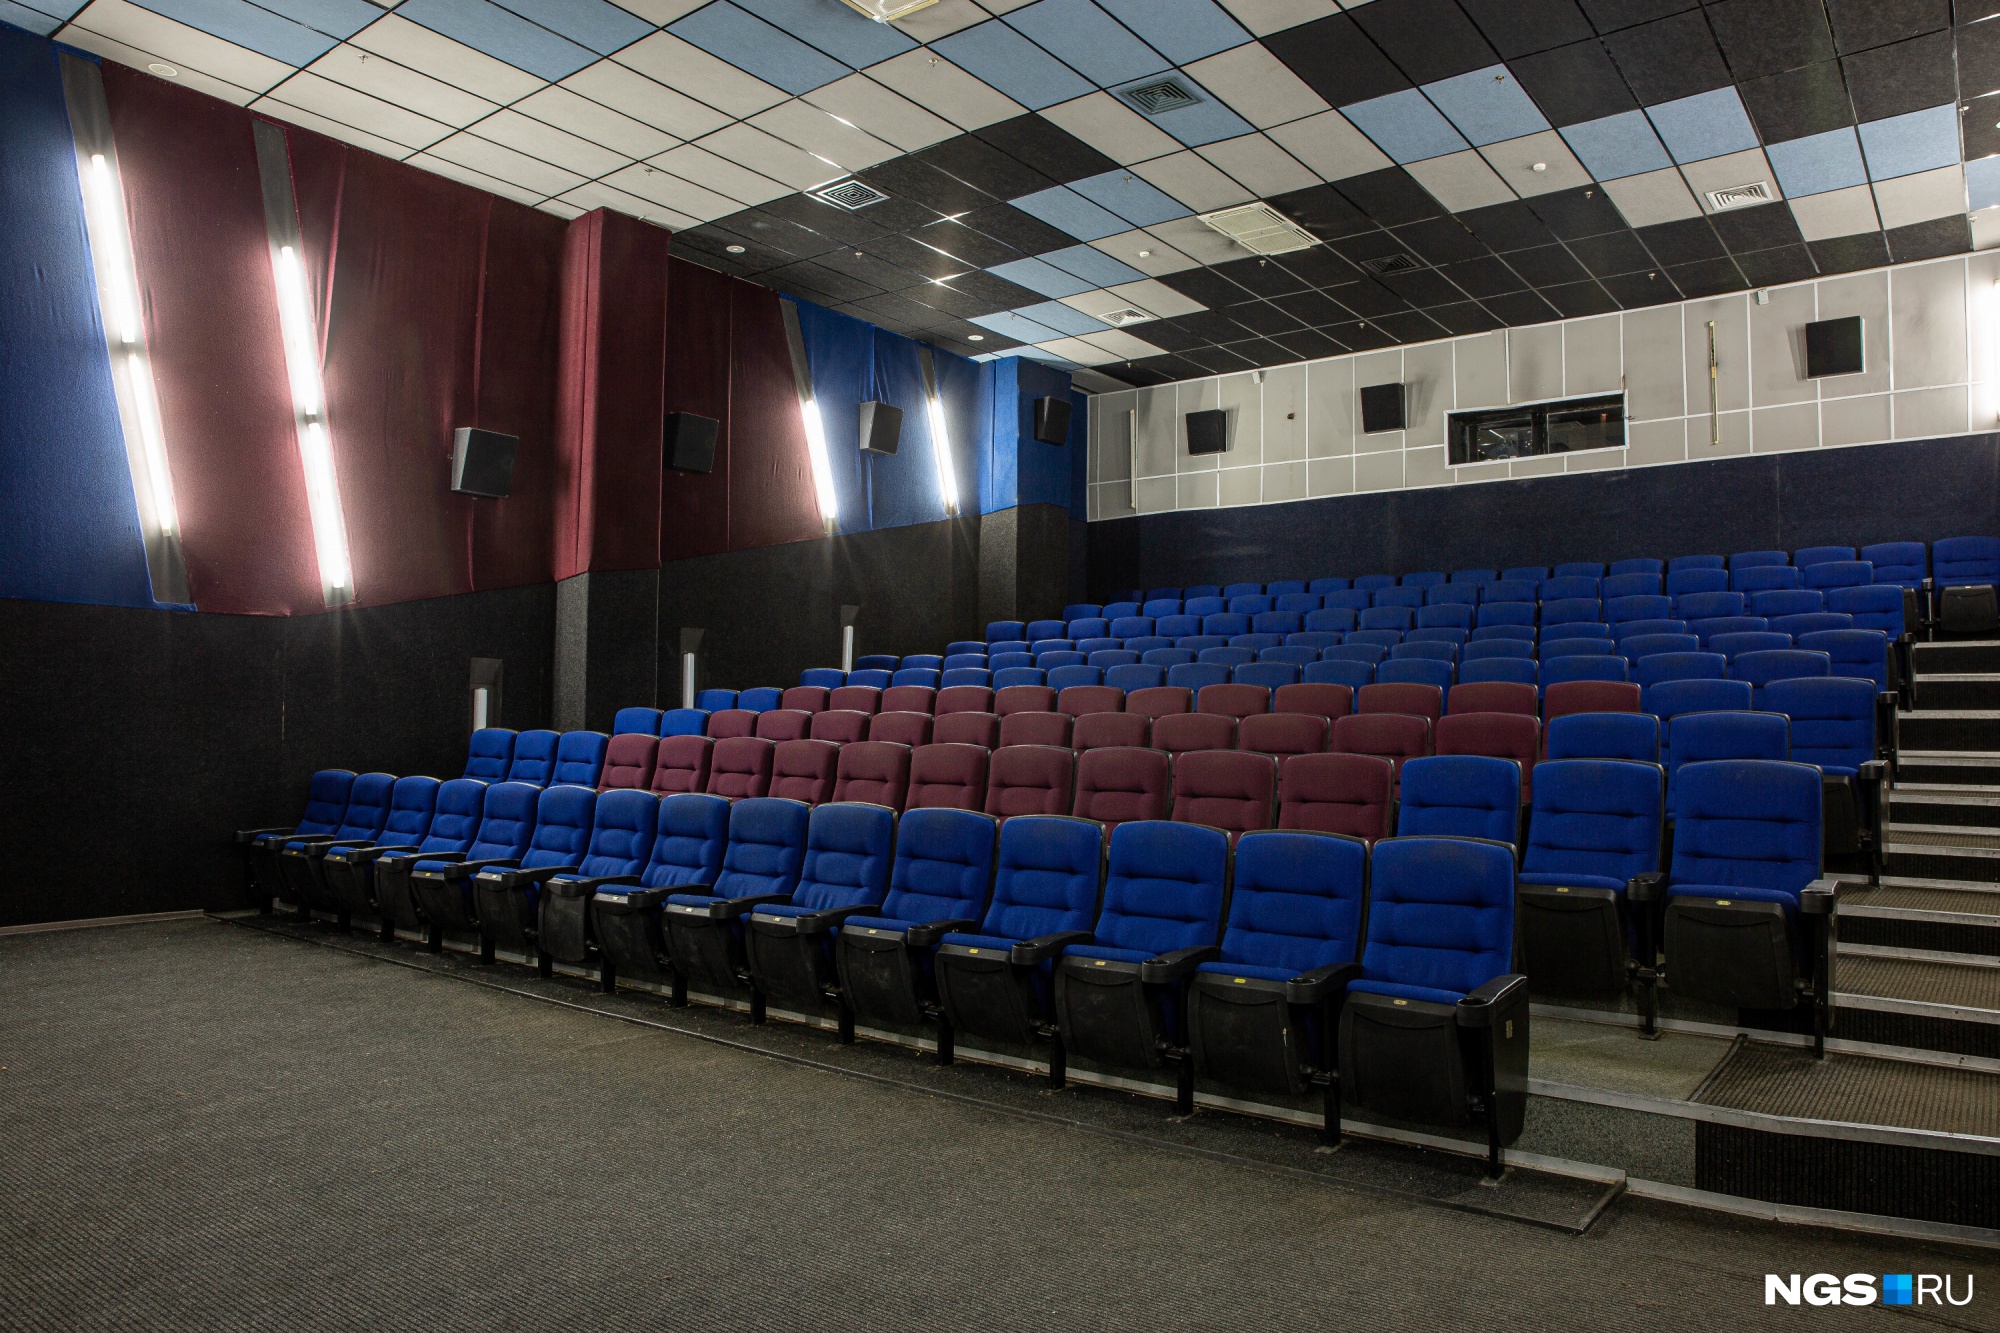 Билеты по 150 рублей и сотрудничество со школами: новосибирские кинотеатры придумывают, как компенсировать потери